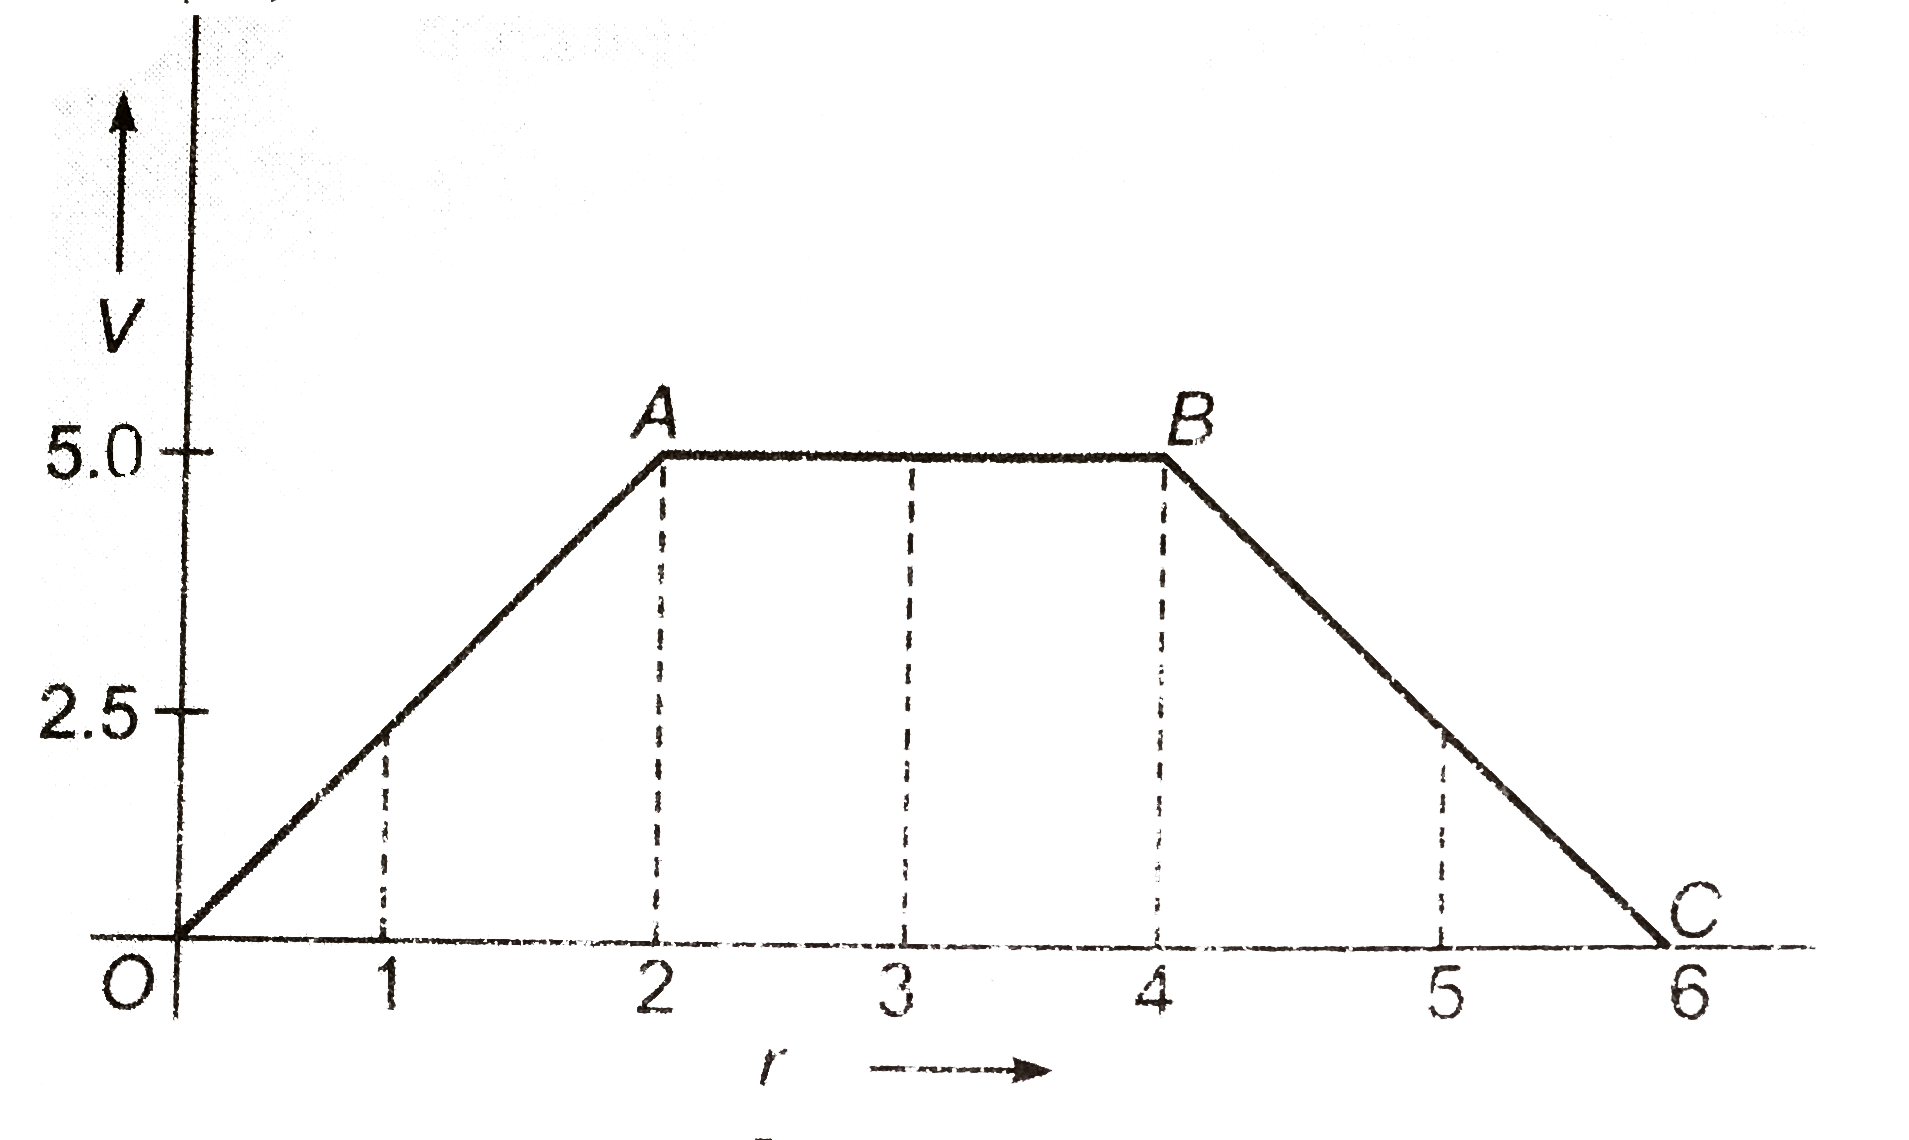 संलग्न चित्र में किसी बिंदु से दुरी (मीटर में) के साथ विभव (वोल्ट में) का परिवर्तन प्रदर्शित है। (i ) r =1 मीटर, (ii ) r =3 मीटर, (iii ) r =5 मीटर पर वैघृत क्षेत्र की तीव्रता ज्ञात कीजिये।